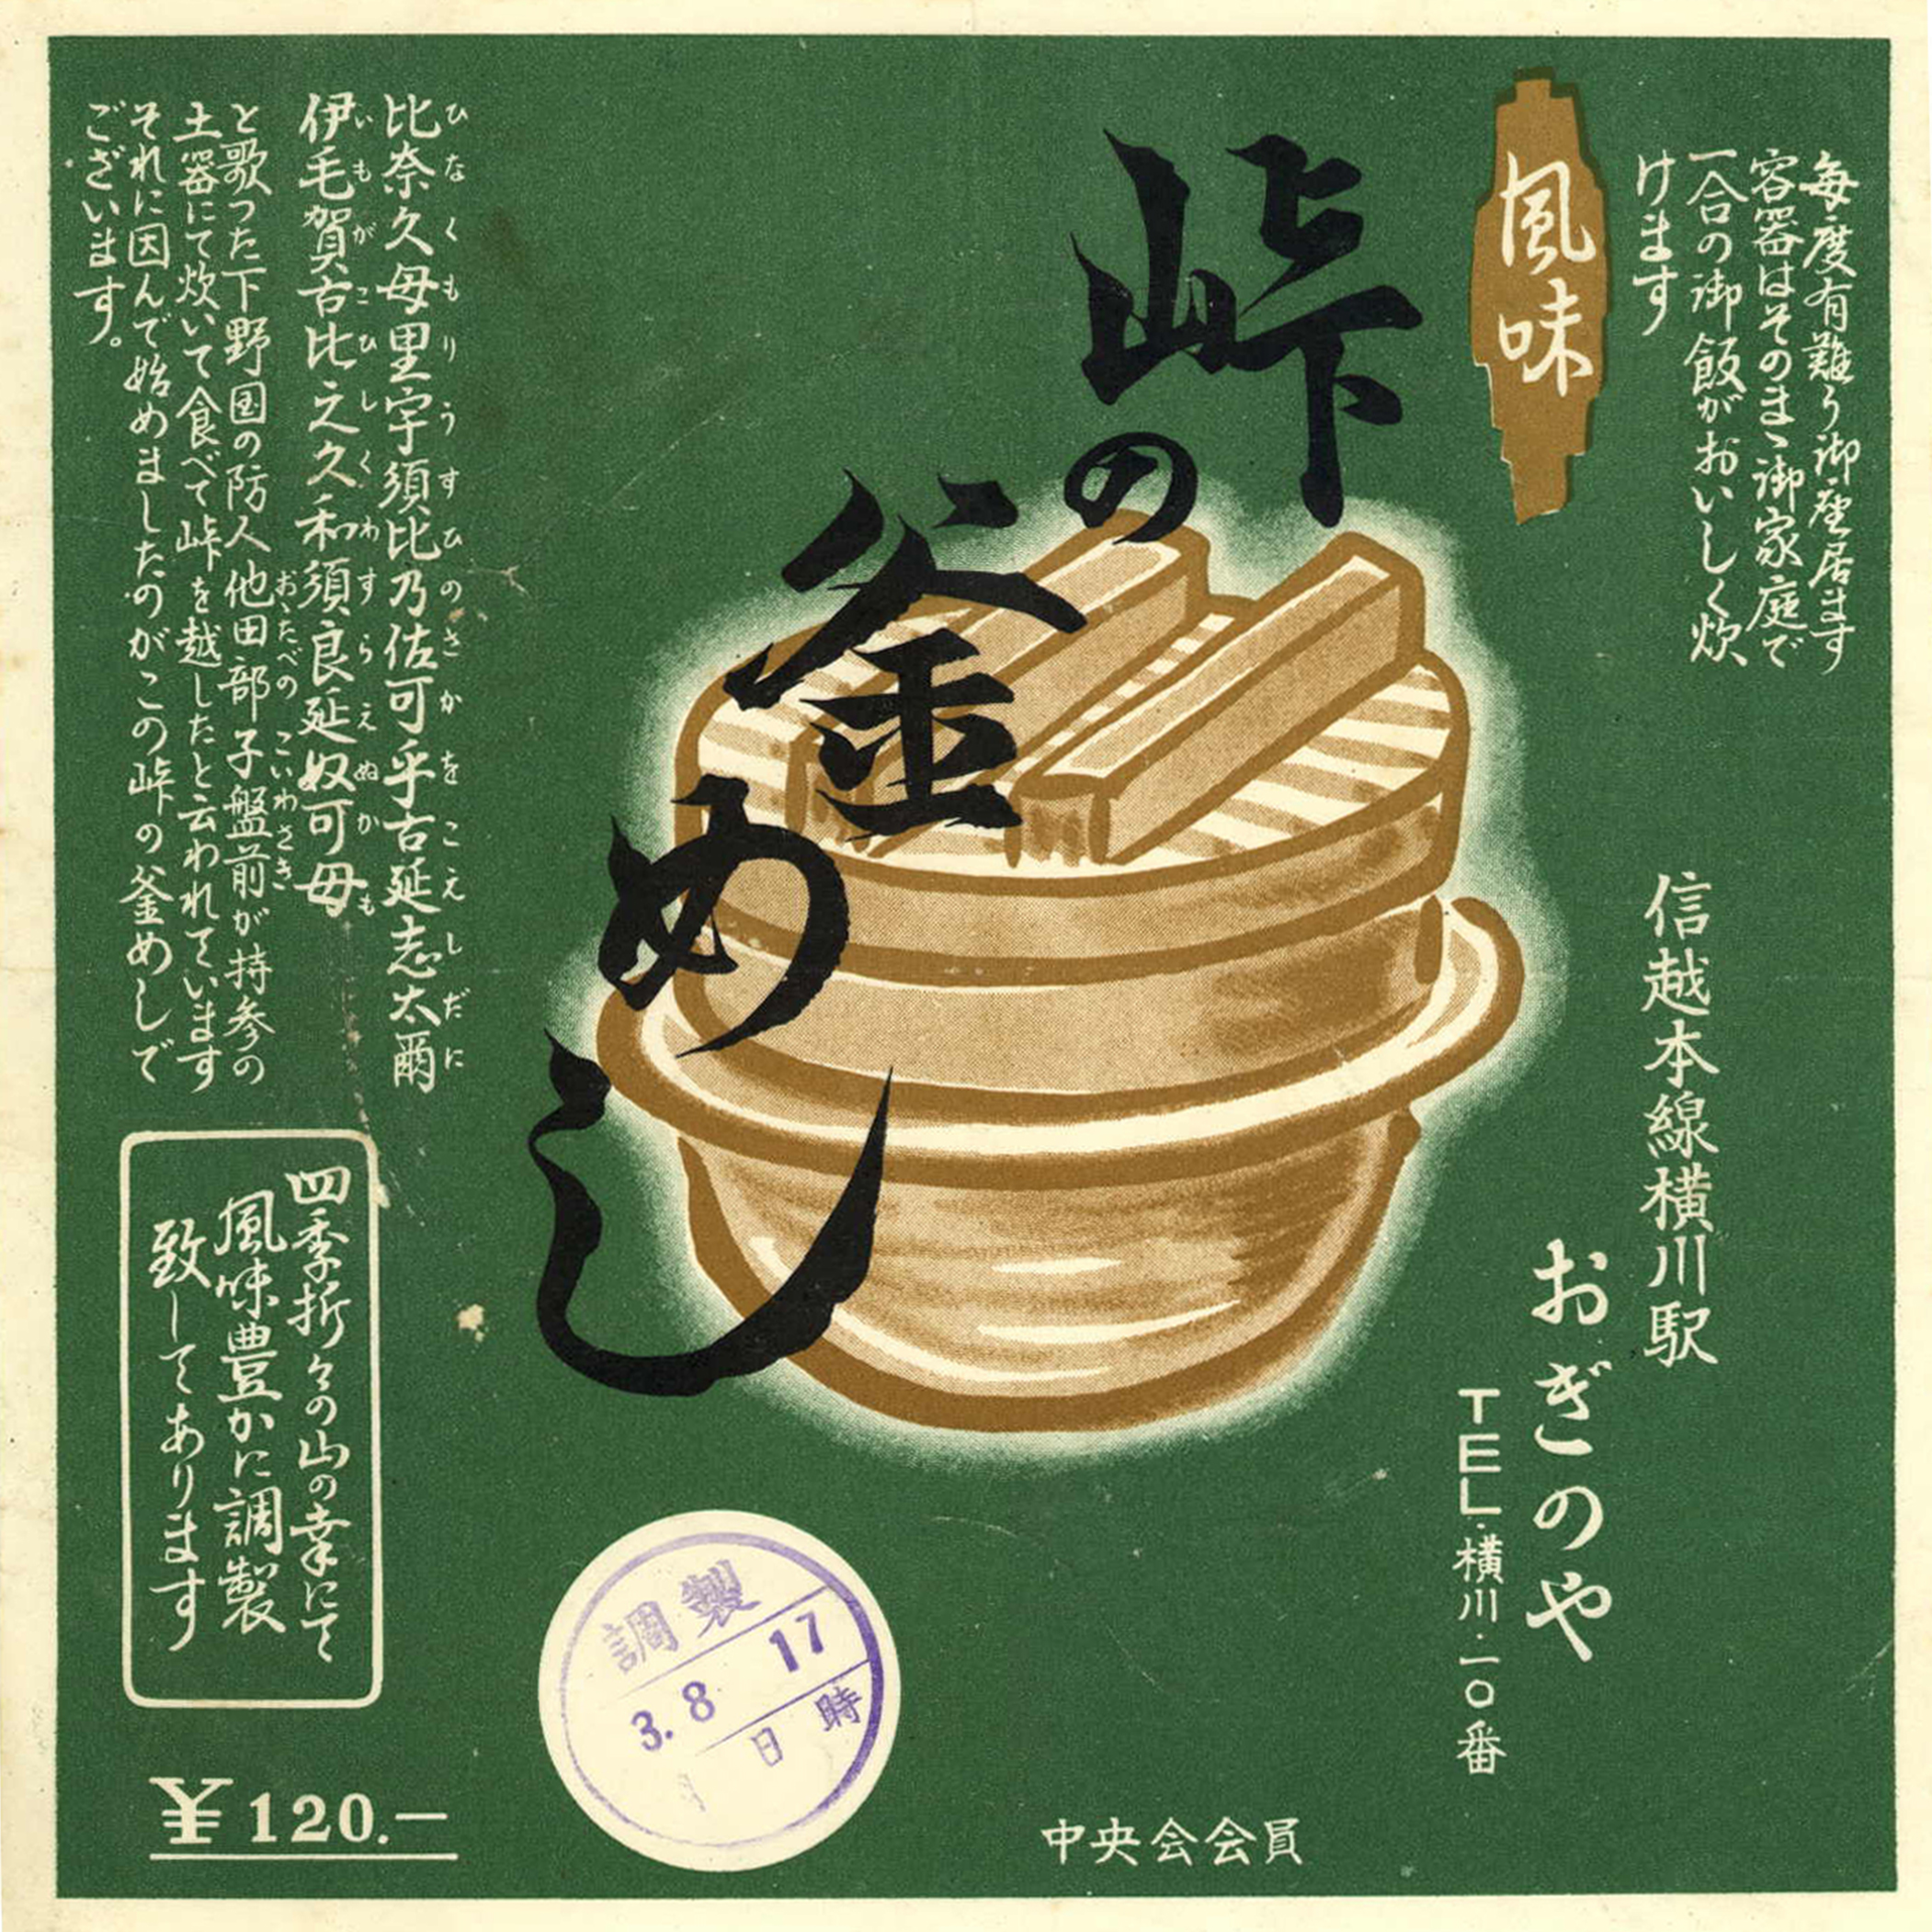 1958 120 yen